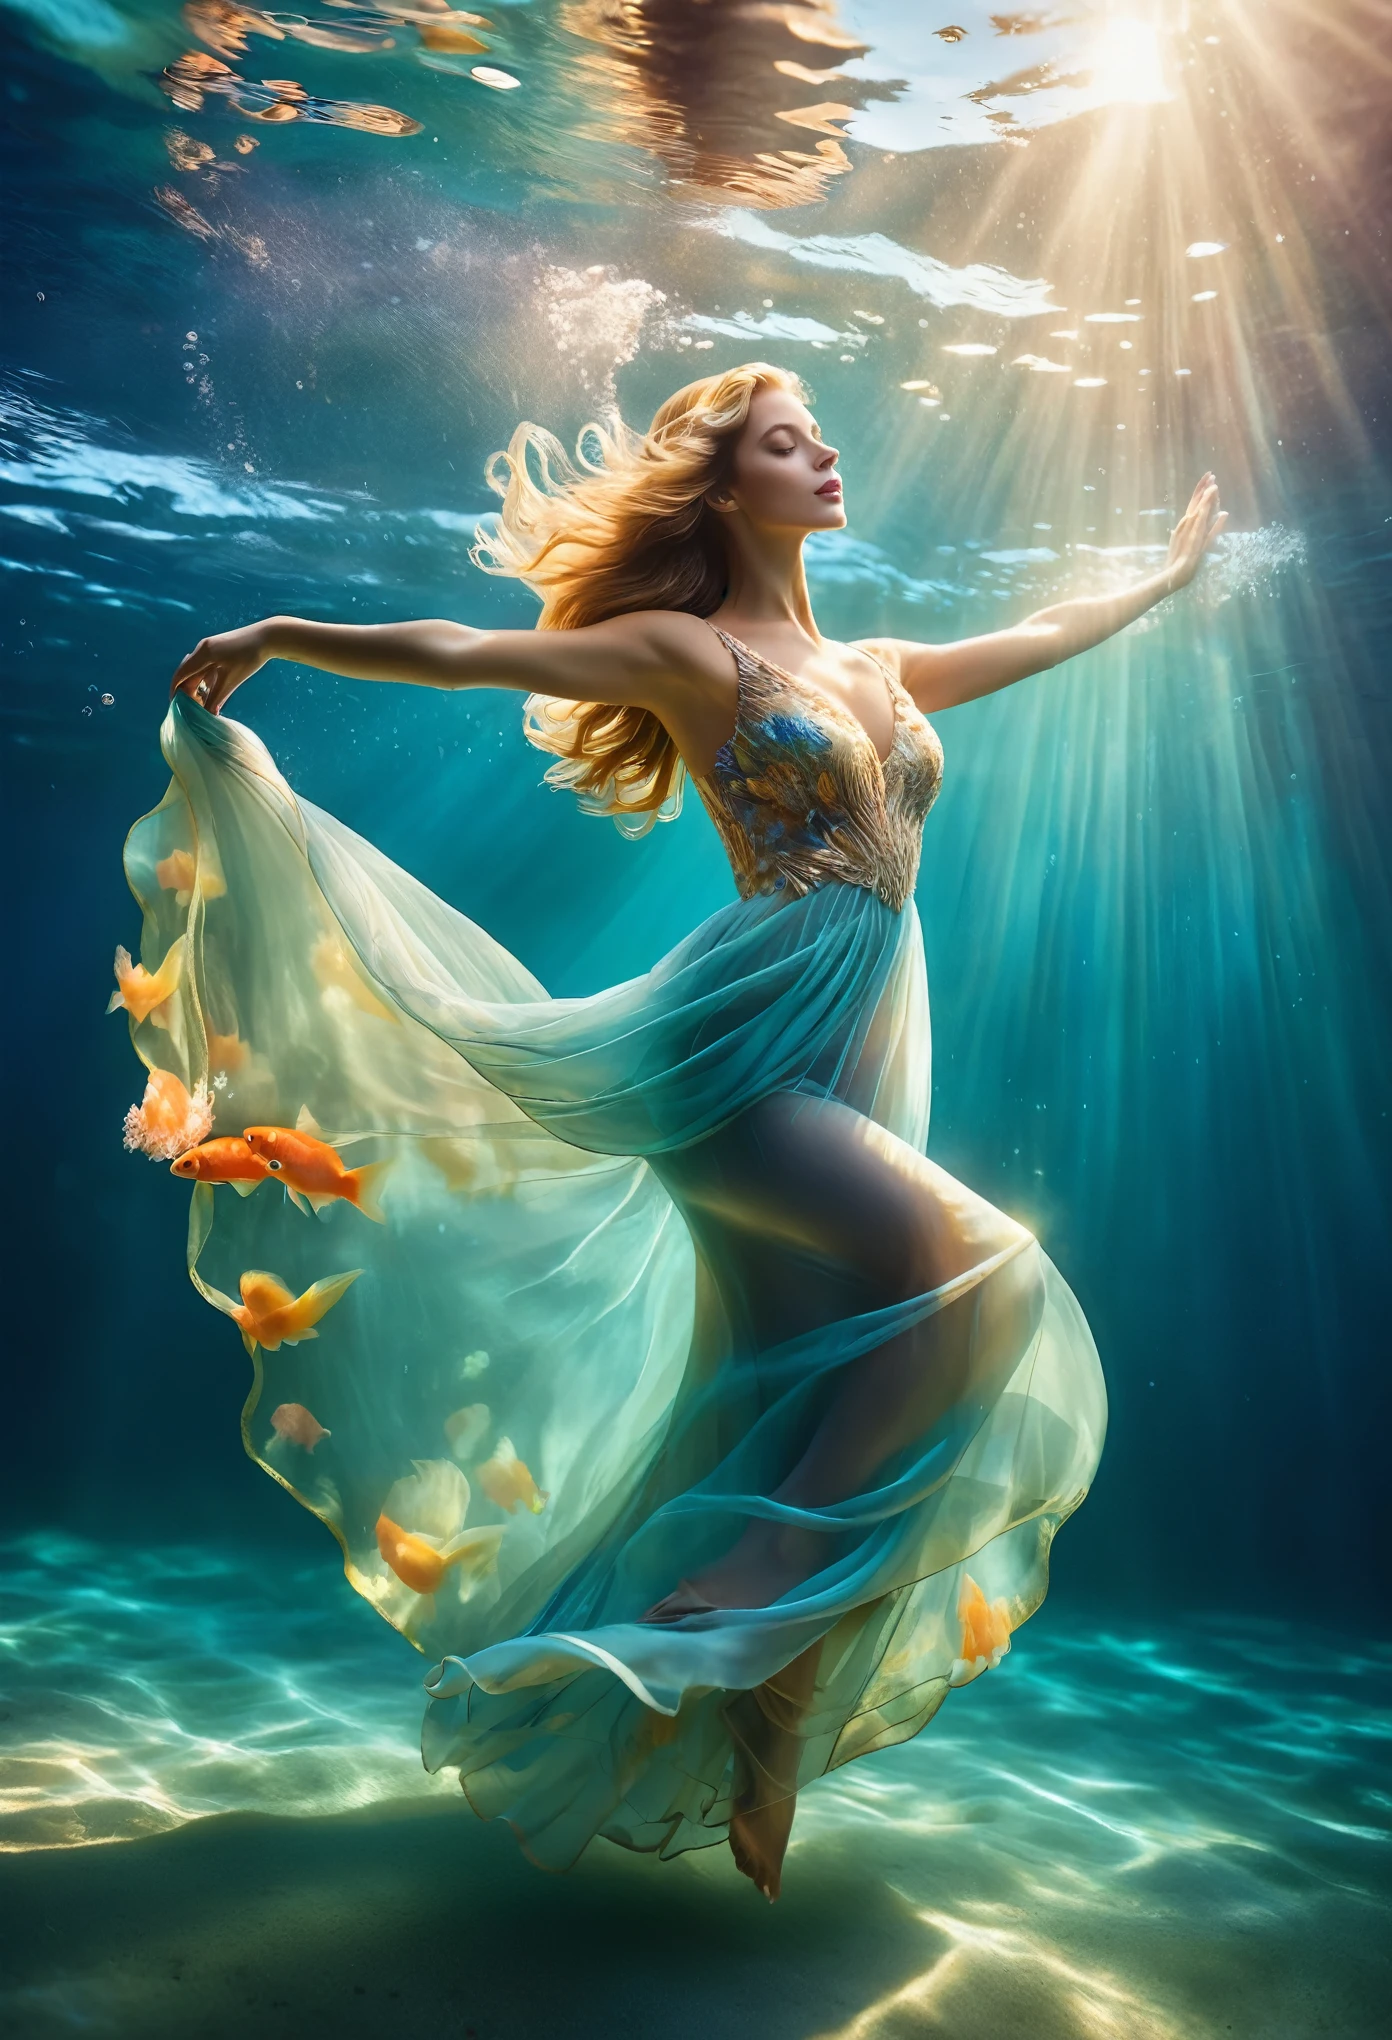 An einem sonnigen Tag (eine bezaubernde Frau, die in einem langen Abendkleid im blauen Meerwasser schwimmt, Kopfstück, mit gebeugter Taille, Unterwasser-Kunstturnen, Unterwasserfotografie, ätherische Atmosphäre, elegante Unterwasserbeleuchtung, die beste Qualität, Hohe Auflösung, ultrafein, Fotorealismus: 1.37, Shaw-Stil, Zena Holloway Stil, lebendige Farben in einer verträumten Palette, sanftes goldenes Sonnenlicht, das durch das Wasser scheint, ein himmlisches Licht schaffen. Die Meeresoberfläche ist glitzernd und üppig, und der fließende Stoff des Abendkleides schaukelt anmutig im Wasser. Der bezaubernde Blick der Frau, Charmante und ausdrucksstarke Augen, und fließendes langes Haar sanft Der Boden schwimmt im Wasser, Schafft eine magische und schwerelose Atmosphäre, mit subtilen Anklängen an Meeresbewohner wie bunte Fische oder zarte Korallen, Die Ruhe und Stille einfangen, die im Wasser schwebt, Eleganz und Raffinesse vereint mit der natürlichen Schönheit des Ozeans, Frauen strahlen Eleganz und Selbstvertrauen aus, fügt sich mühelos in die Wasserumgebung ein.